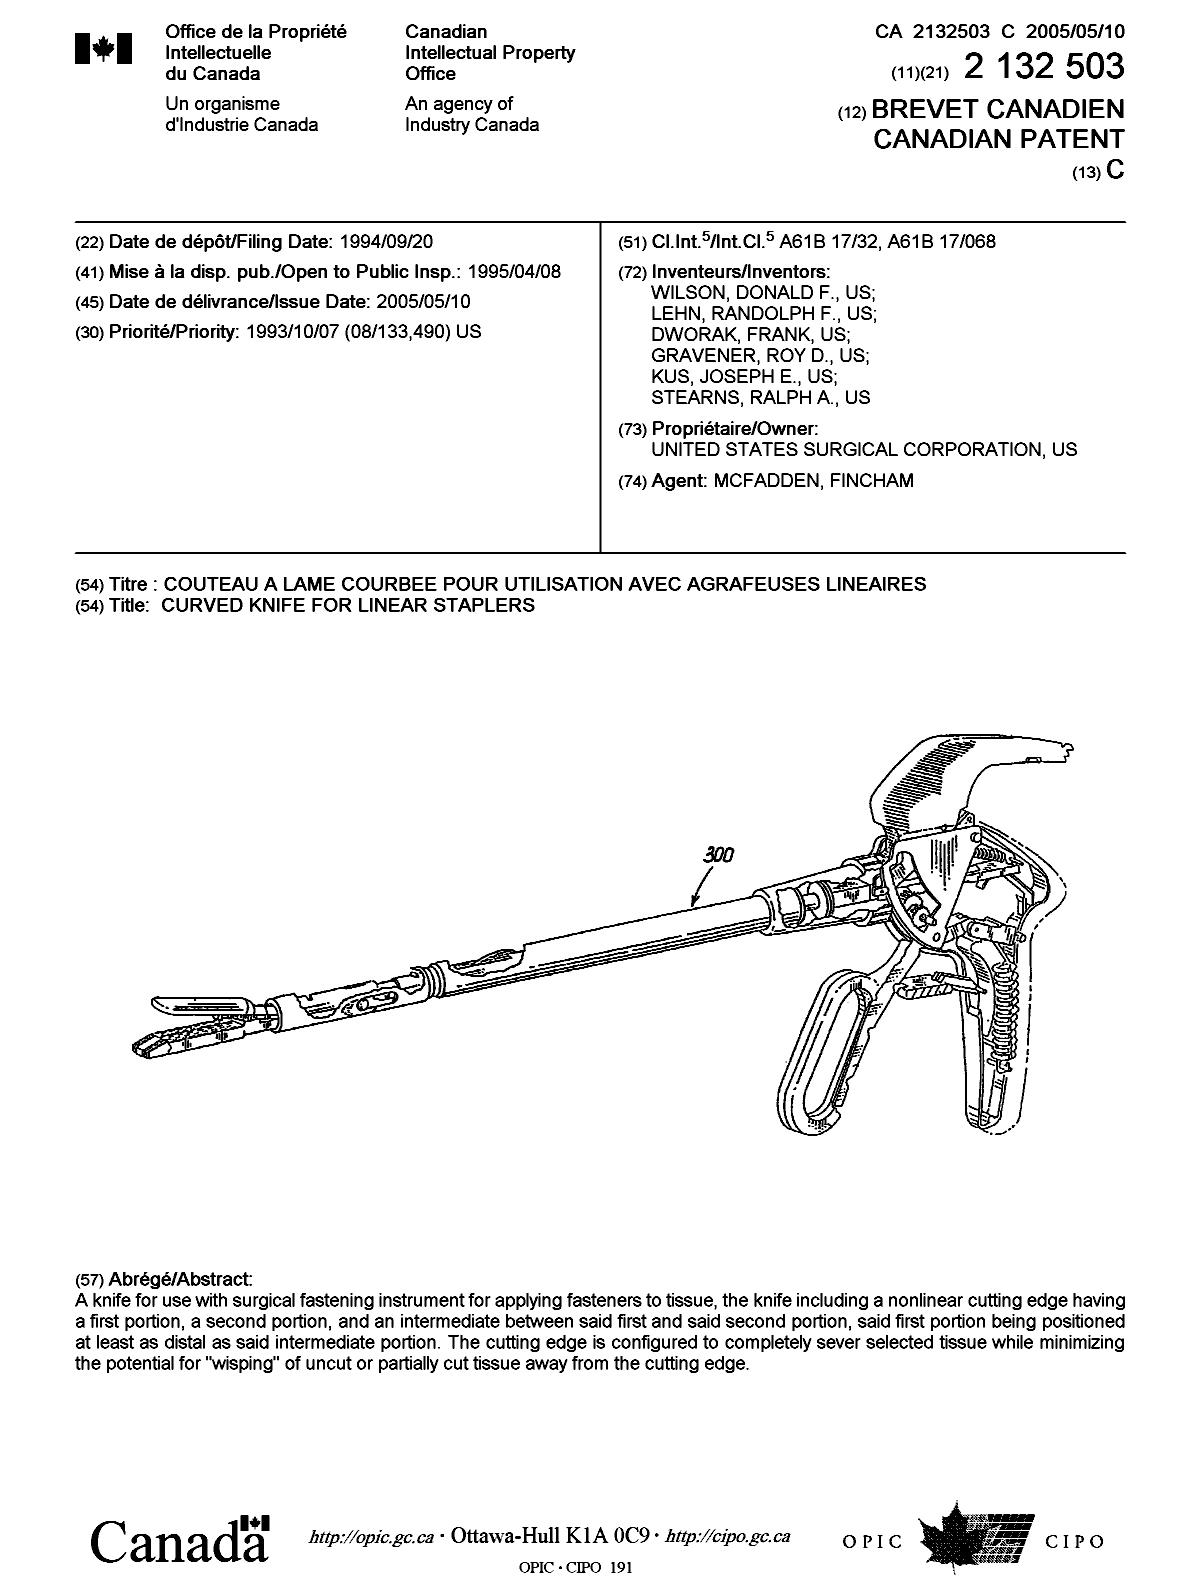 Document de brevet canadien 2132503. Page couverture 20050411. Image 1 de 1